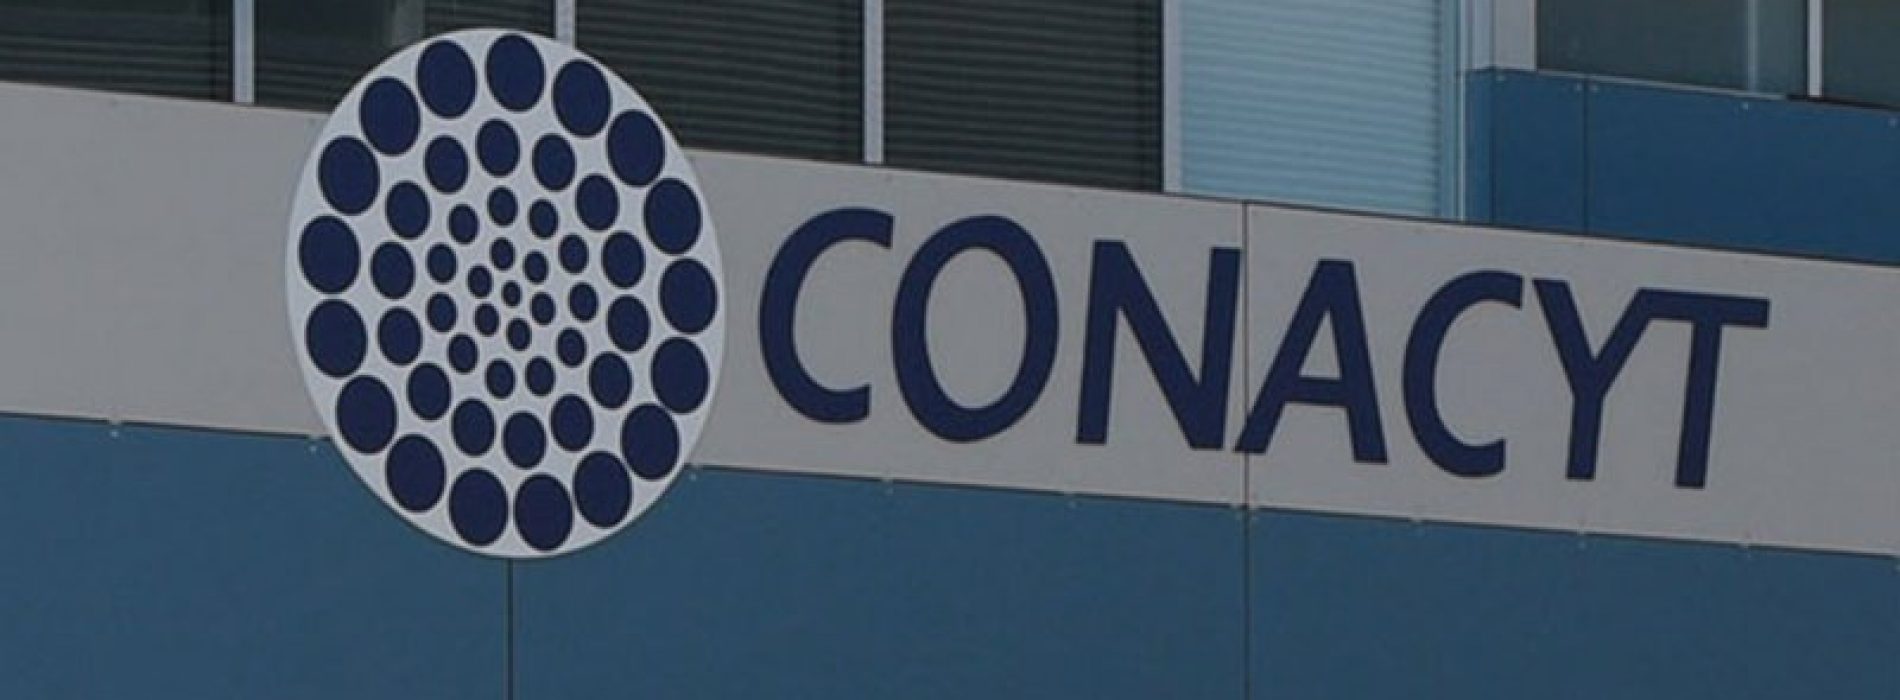 Investigadores exigen disculpa pública del Conacyt tras acusaciones